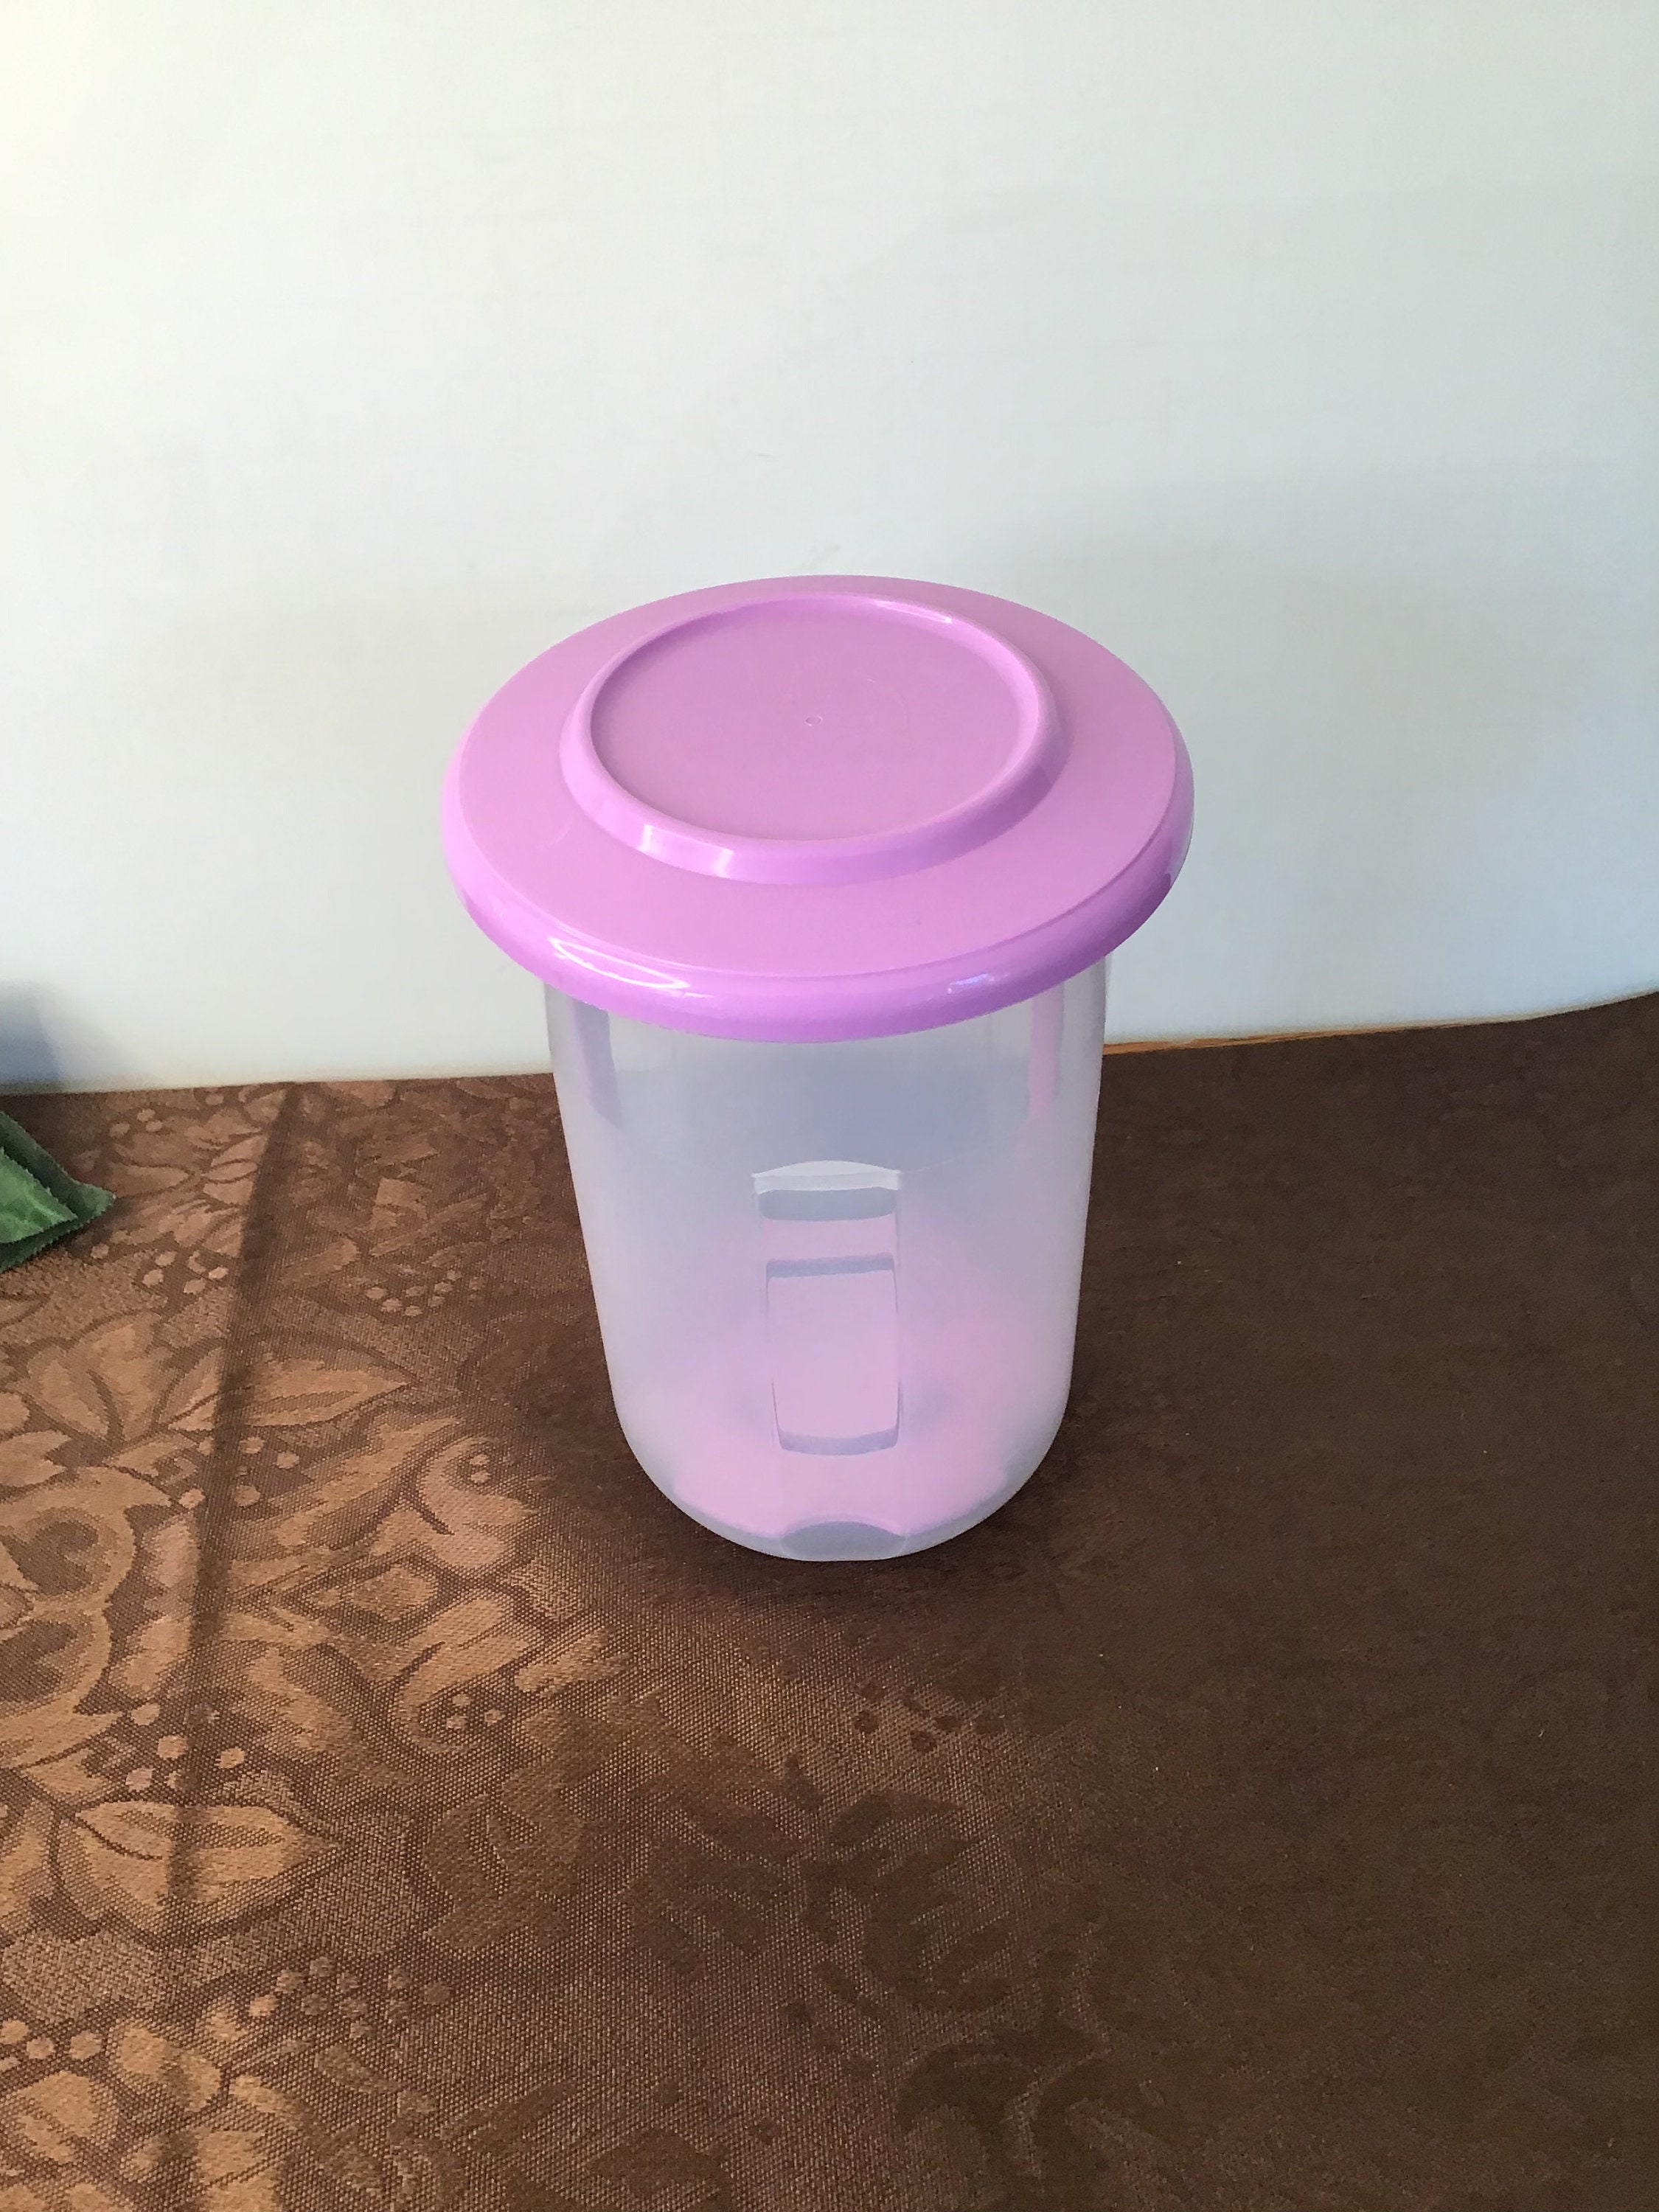 Tupperware Pick-A-Deli Container- Pink-NIP